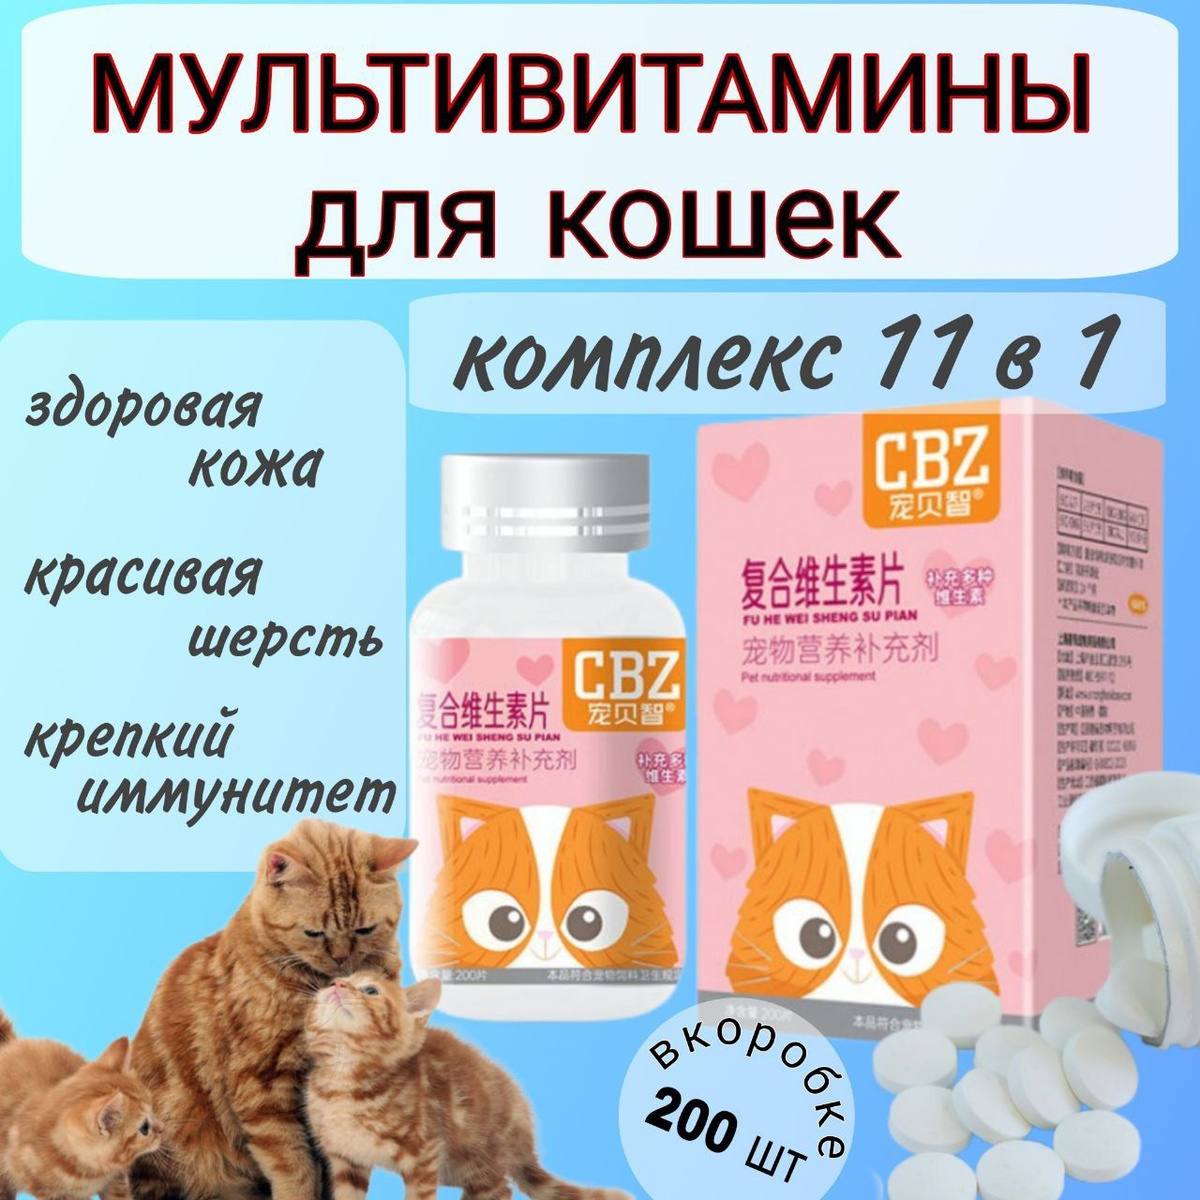 https://www.ozon.ru/product/multivitaminy-dlya-koshek-familyrich-1456321506/?oos_search=false